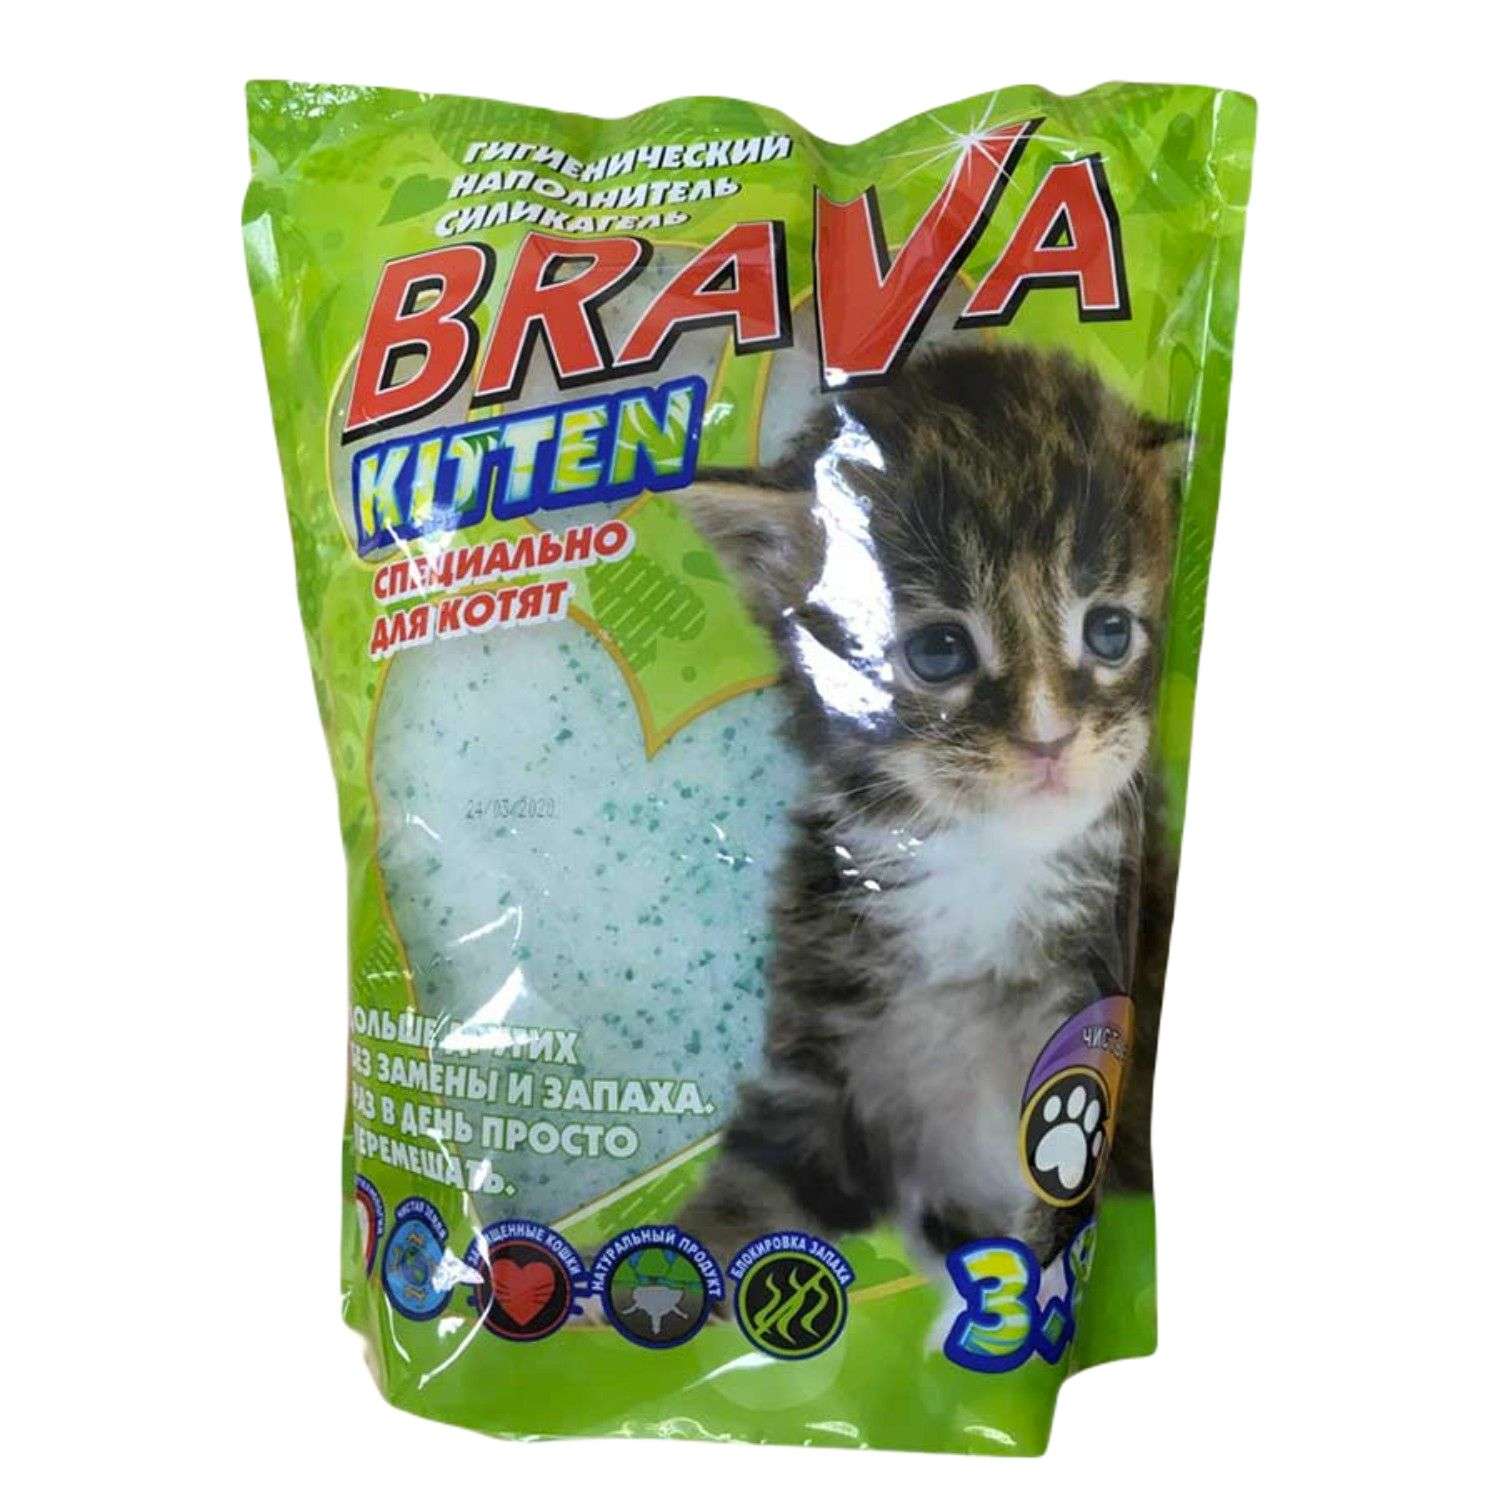 Наполнитель для кошек BraVa Kitten силикагелевый впитывающий 3.8л - фото 1